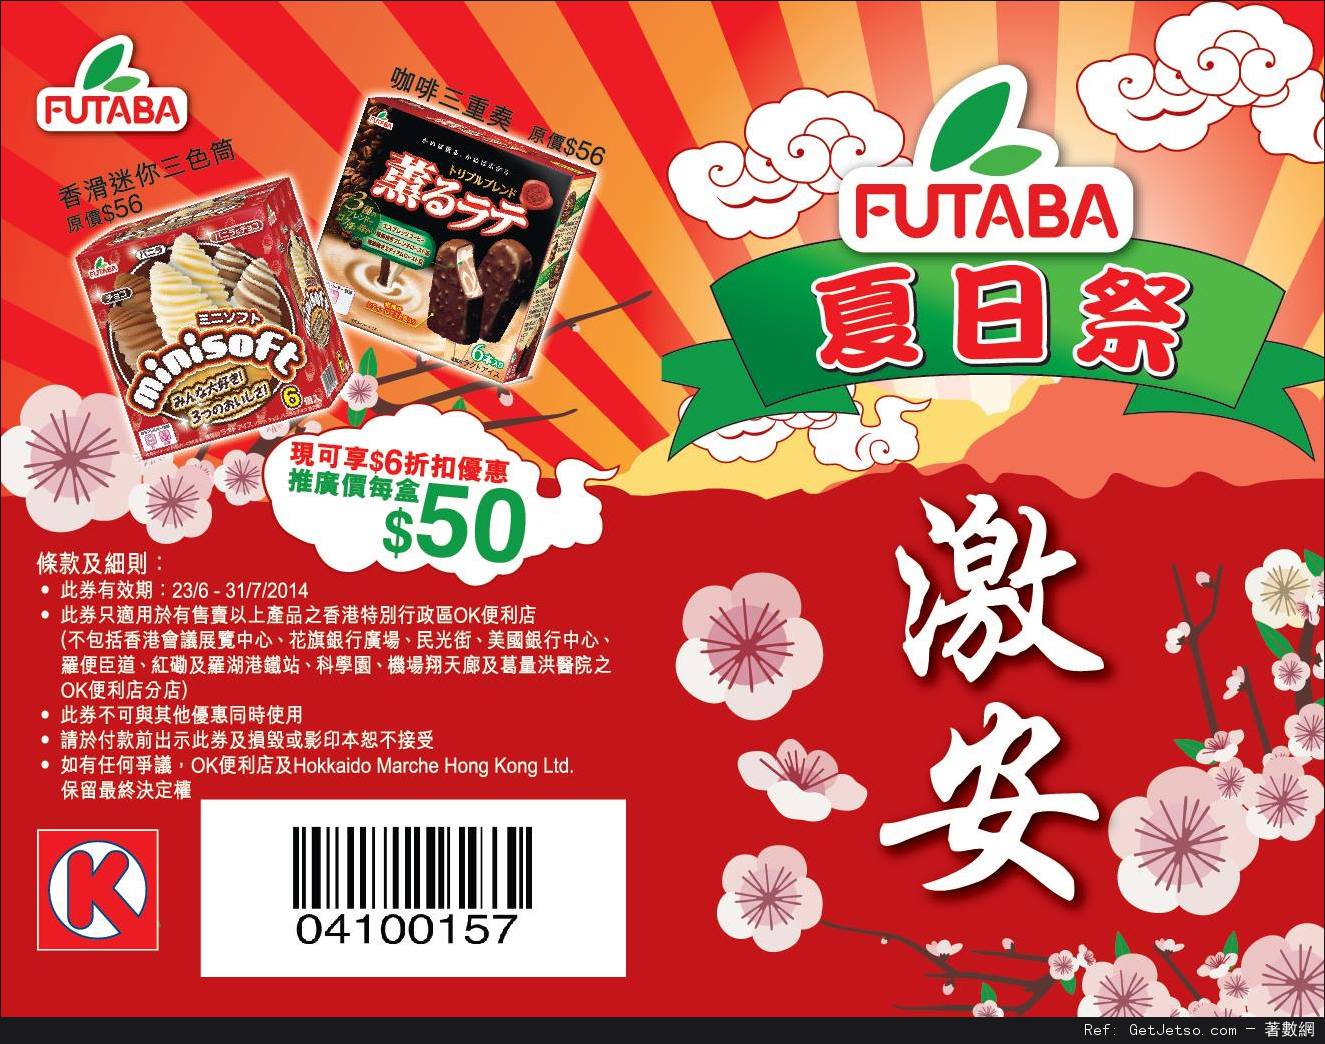 OK便利店日本Futaba系列雪糕現金折扣優惠券(至14年7月31日)圖片1